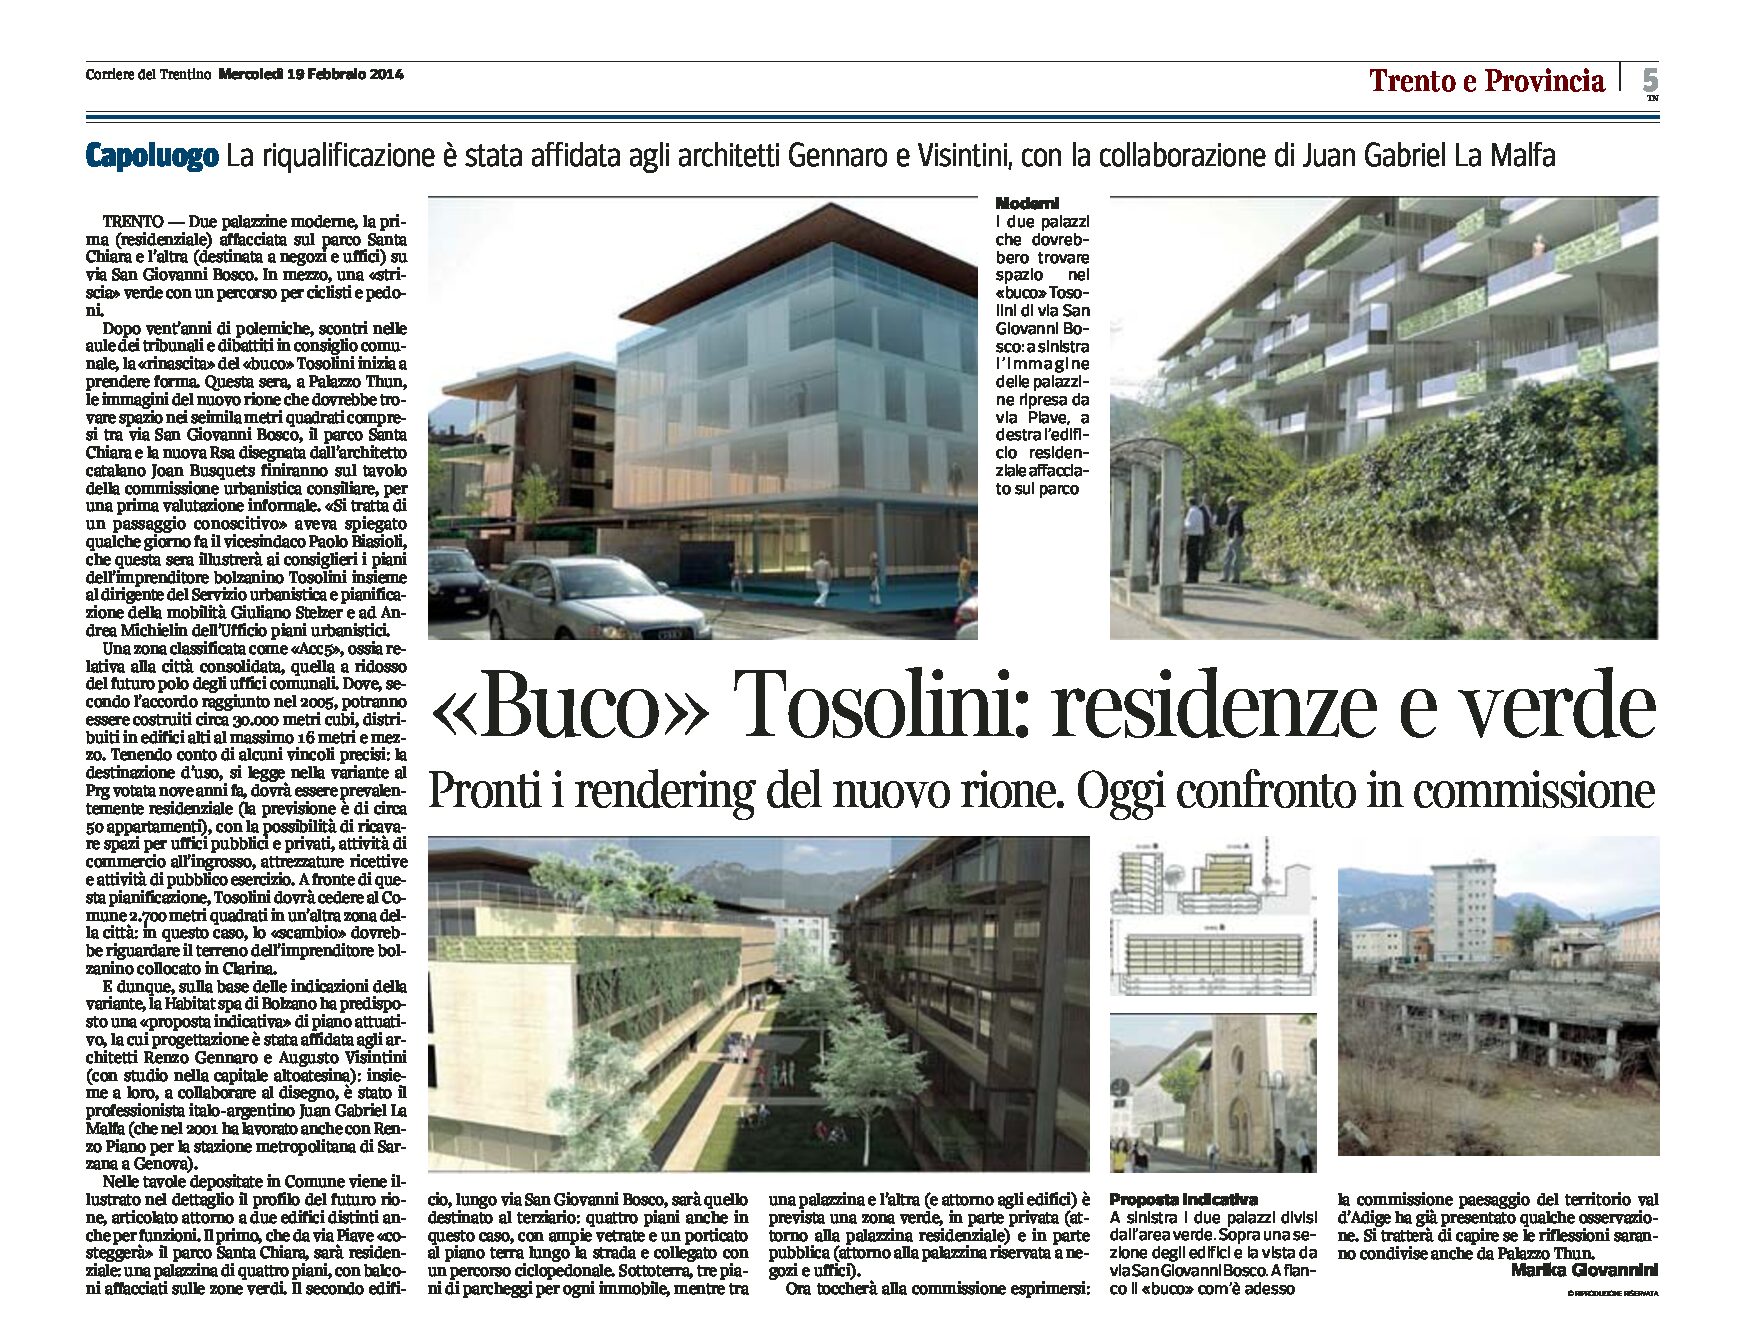 Trento: “buco” Tosolini, residenze e verde